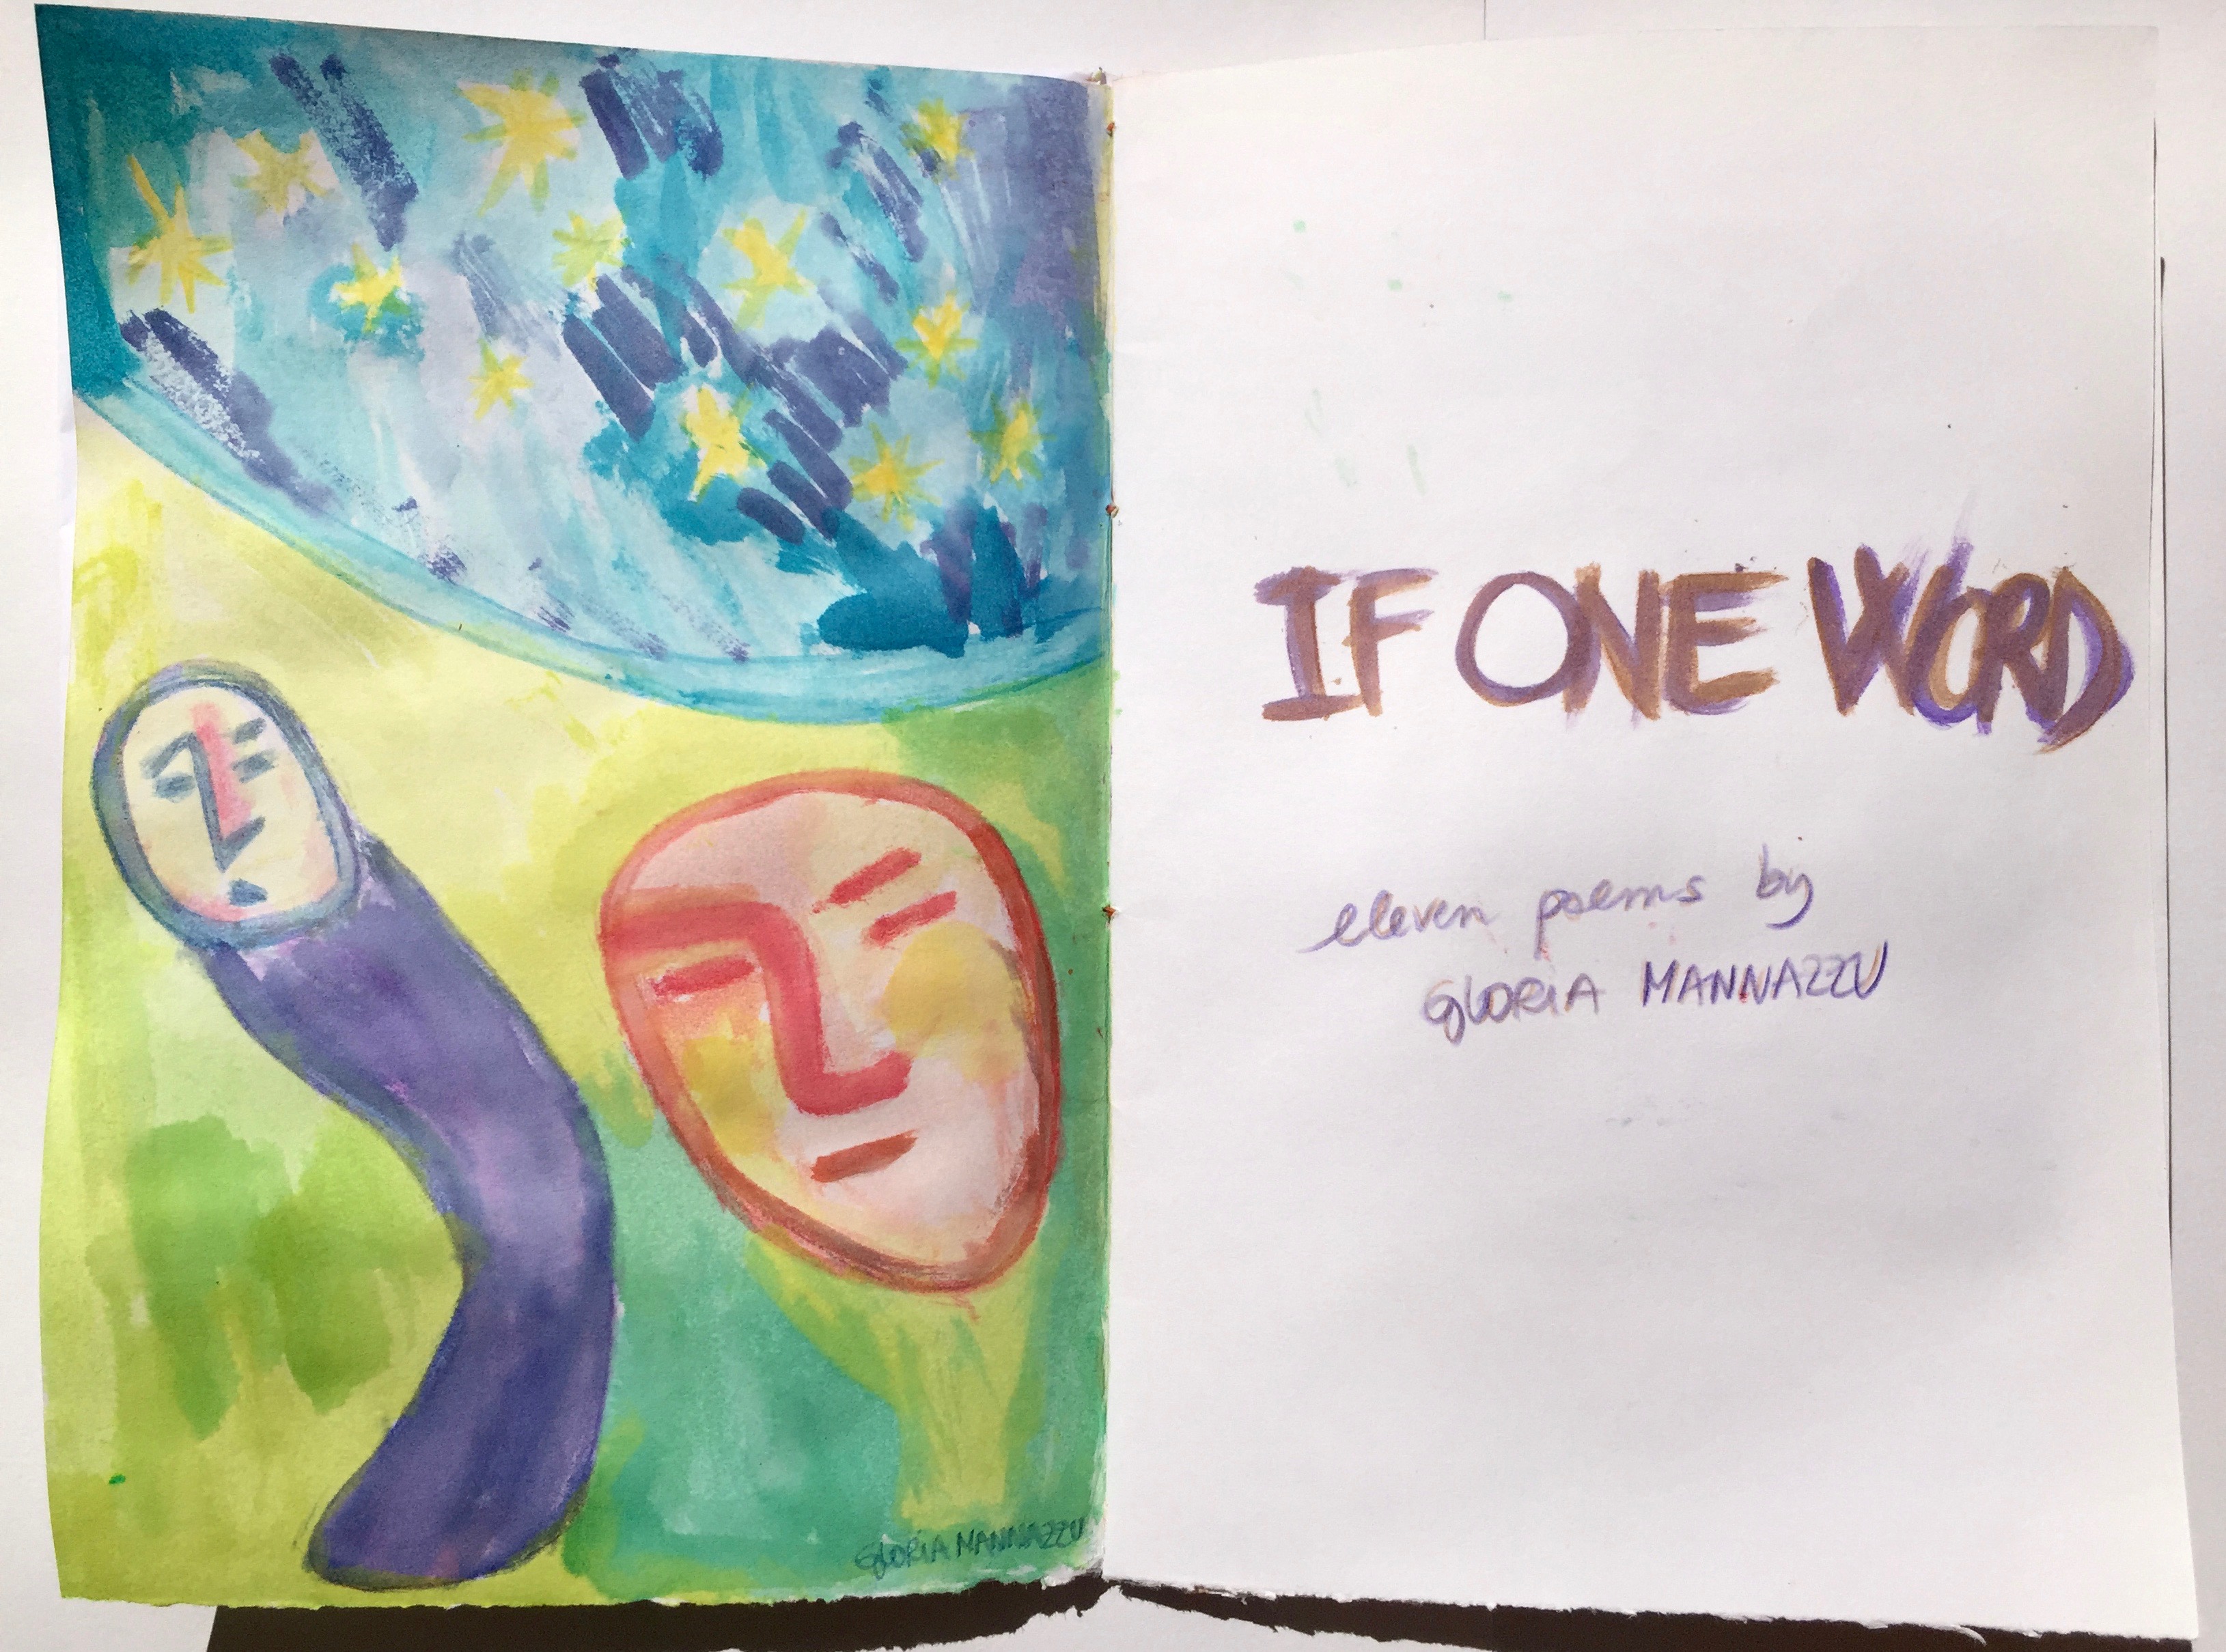 "If one word" (2017) - Chapbook - Gloria Mannazzu - 3/15